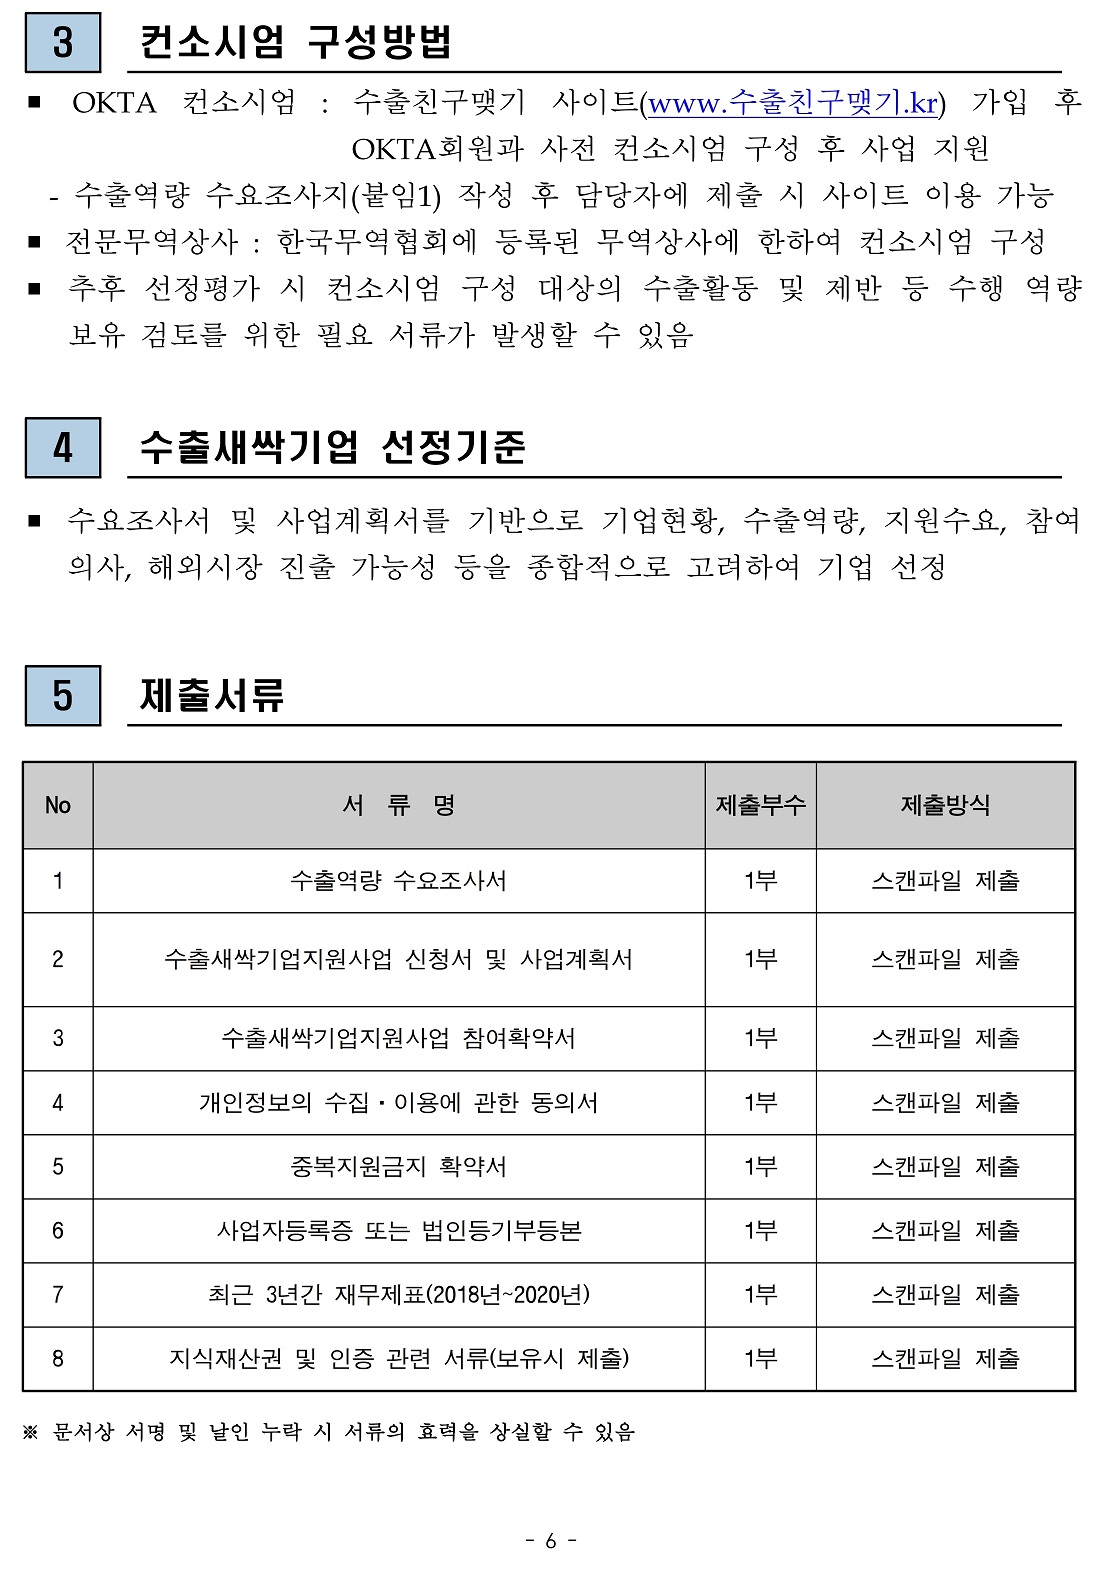 붙임1) 2021년 경북지역 지역특화산업 수출새싹기업지원사업 수혜기업 모집 공고문.pdf_page_6.jpg 이미지입니다.